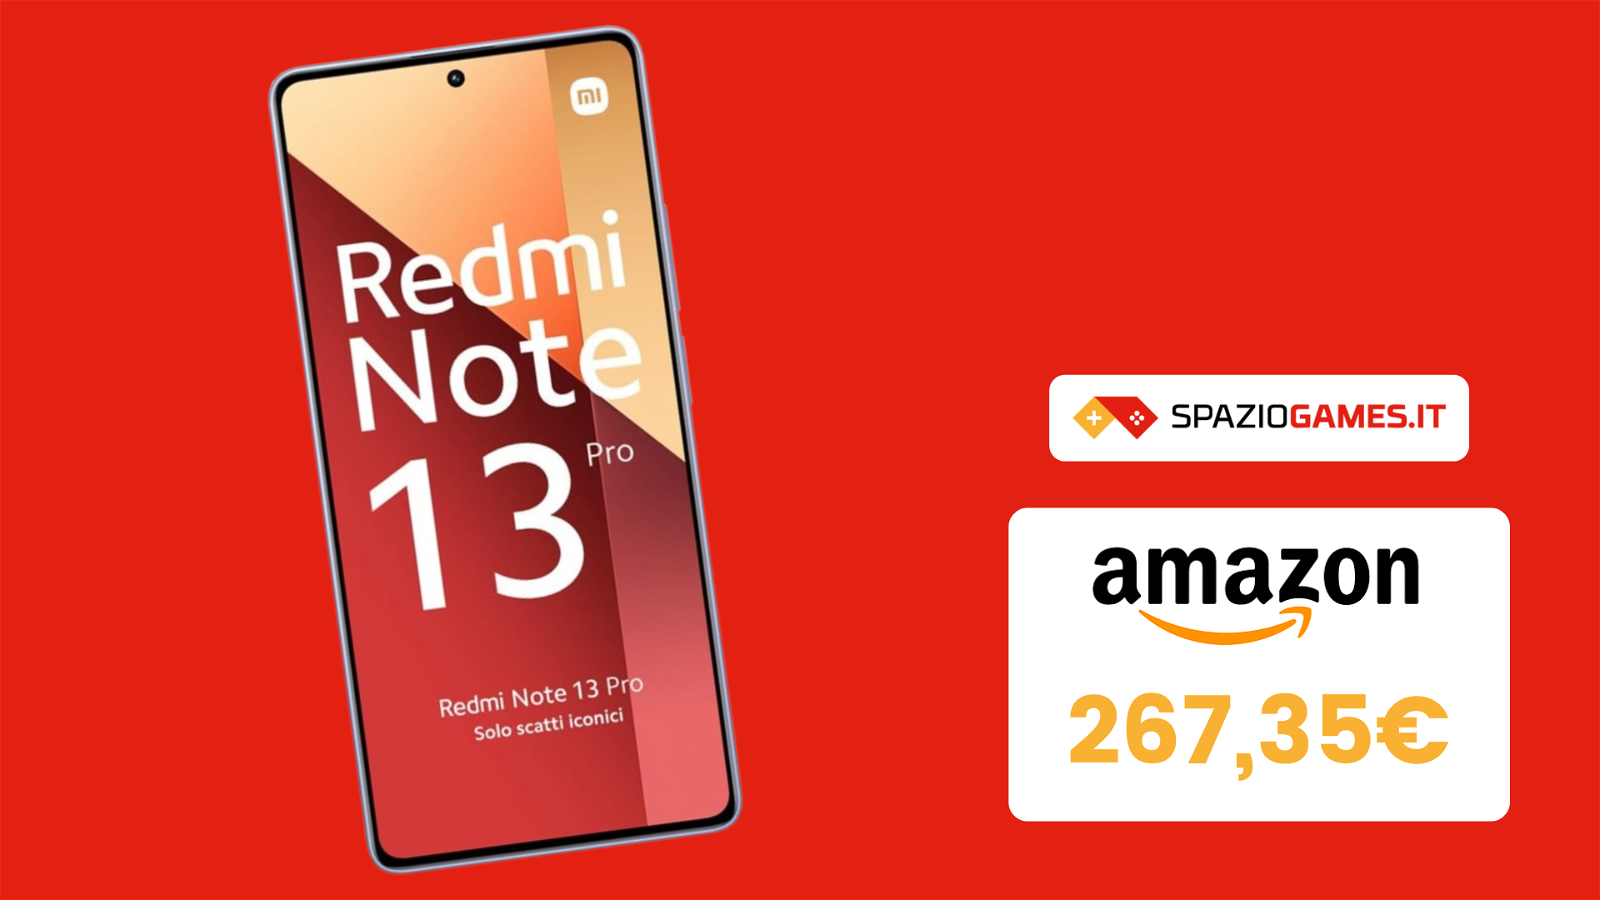 L'amato Xiaomi Redmi Note 13 Pro oggi costa il 32% in meno